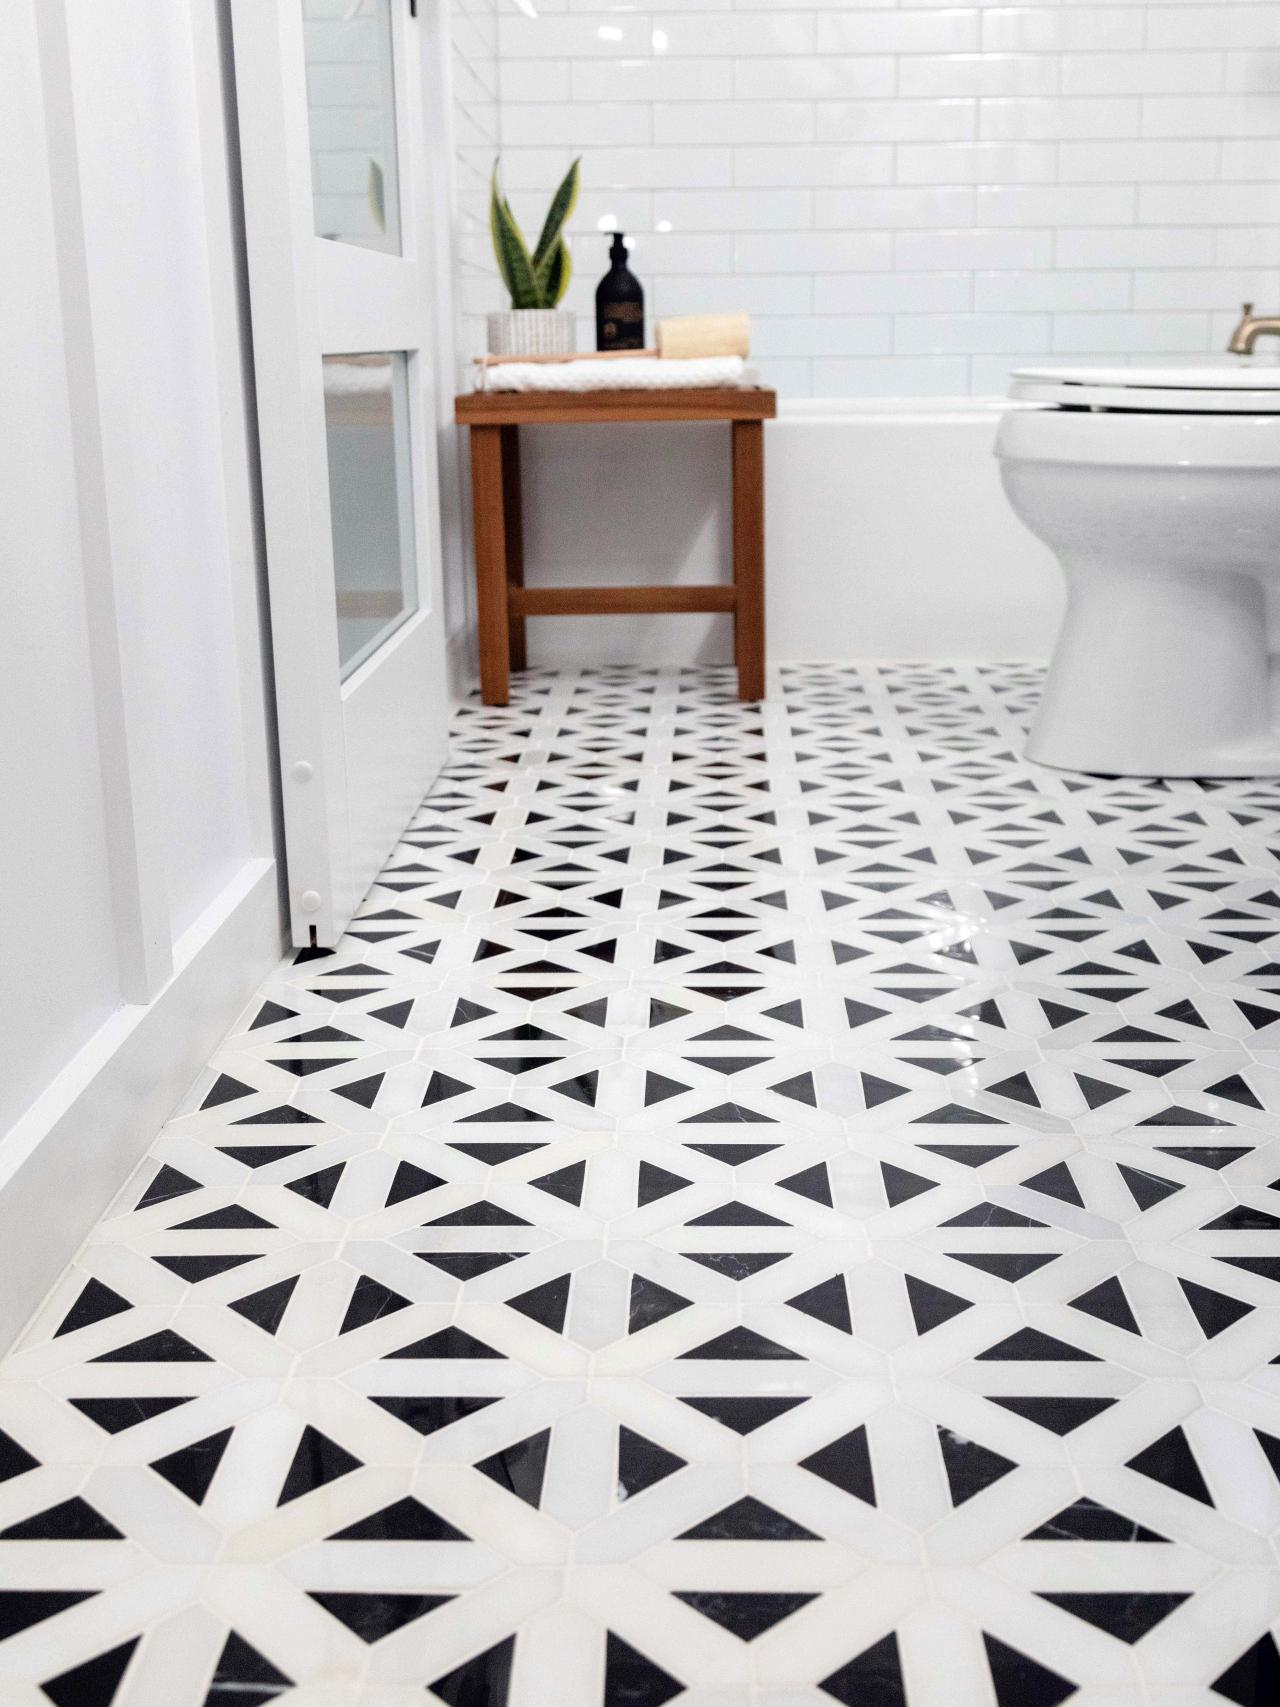 How To Lay A Tile Floor, How To Lay Bathroom Tile Floor